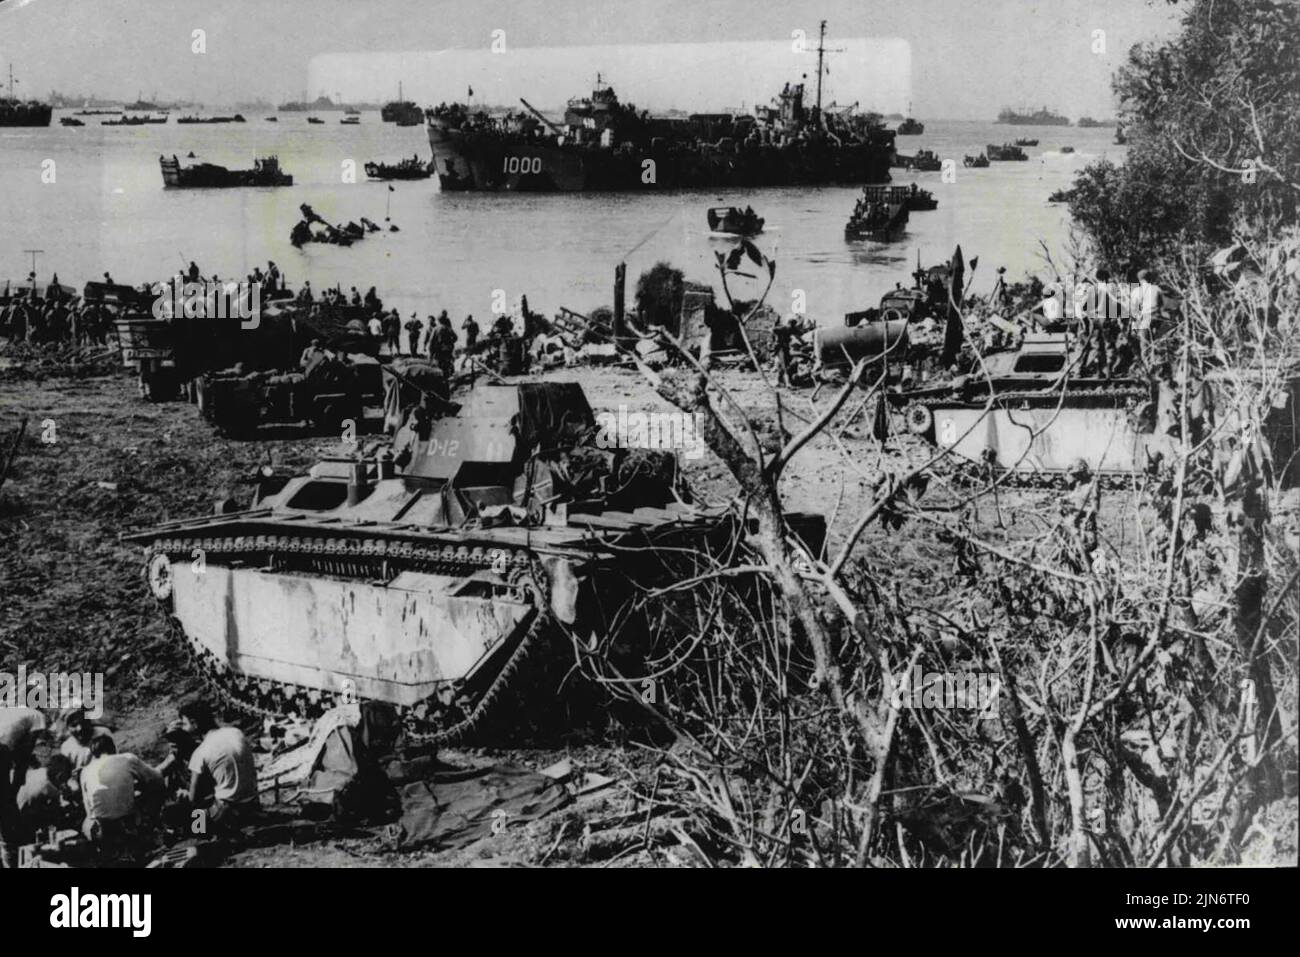 I rinforzi raggiungono Okinawa: Gli uomini e le attrezzature americane vengono a terra a Okinawa, isola giapponese Ryukyu, a 375 miglia da Kyushu, isola giapponese. Una LST attende di scaricare il proprio carico, mentre la spiaggia è una scena di attività febbrile, mentre le forze americane si preparano a muoversi verso l'interno per rafforzare le forze americane impegnate nei combattimenti più sanguinosi mai visti nella campagna del Pacifico. Maggio 24, 1945. (Foto di stampa associata). Foto Stock